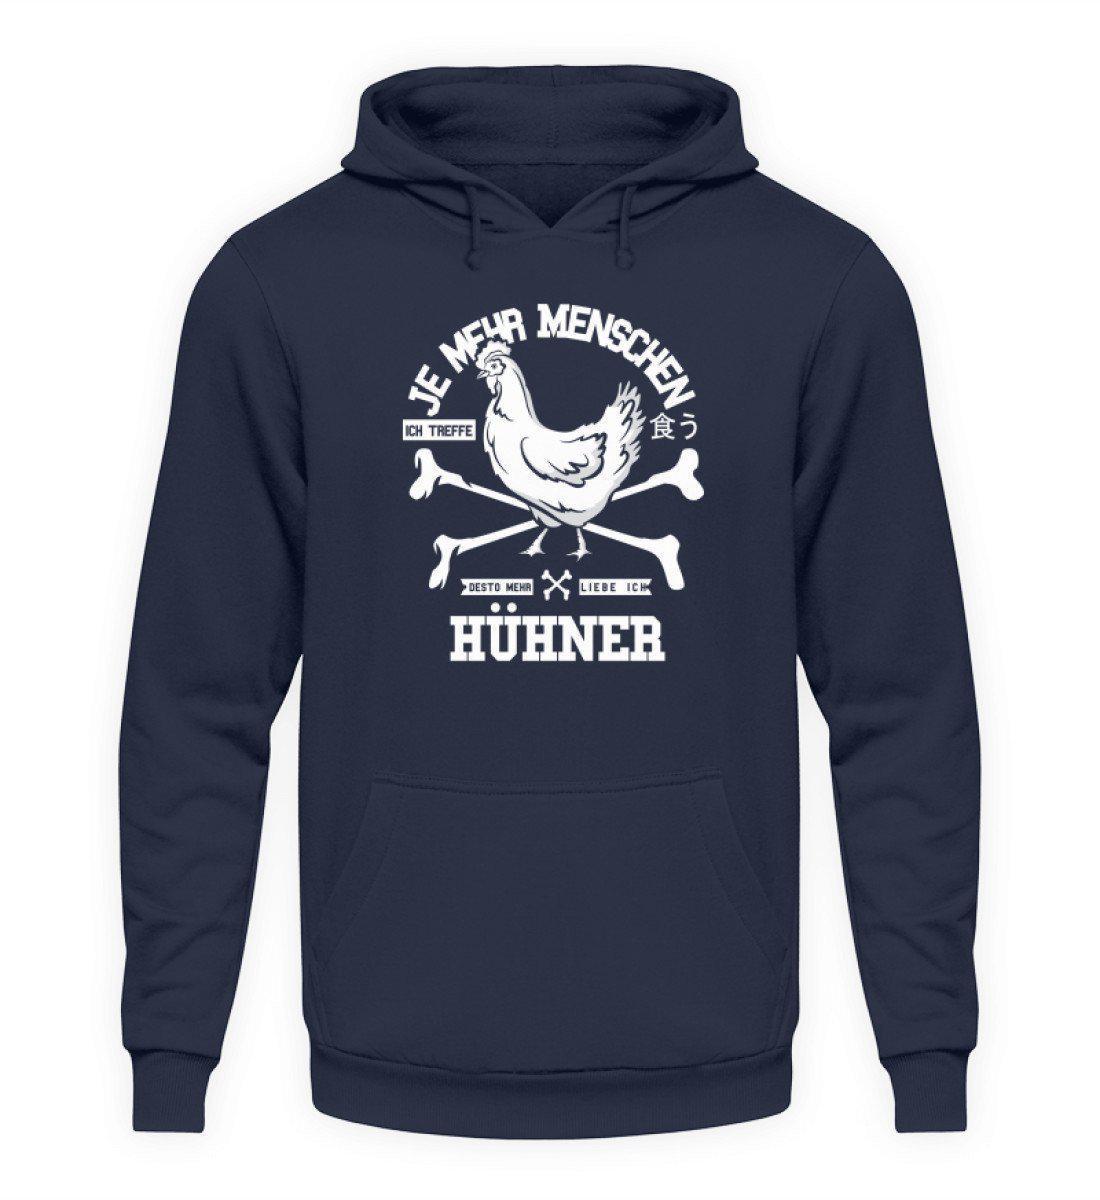 Desto mehr liebe ich Hühner · Unisex Kapuzenpullover Hoodie-Unisex Hoodie-Oxford Navy-L-Agrarstarz